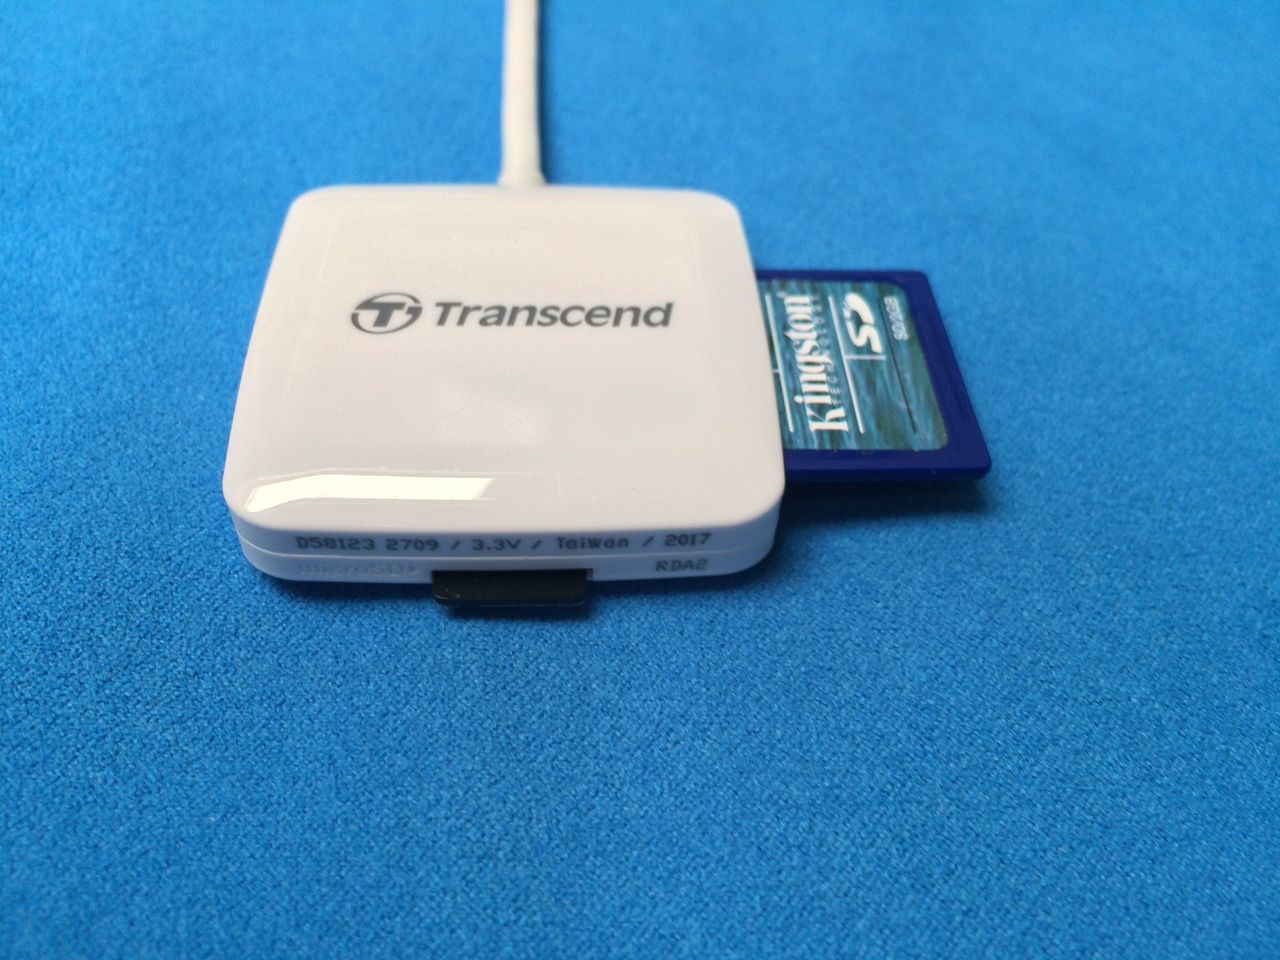 Czytnik kart SD i microSD — Transcend Reader RDA2